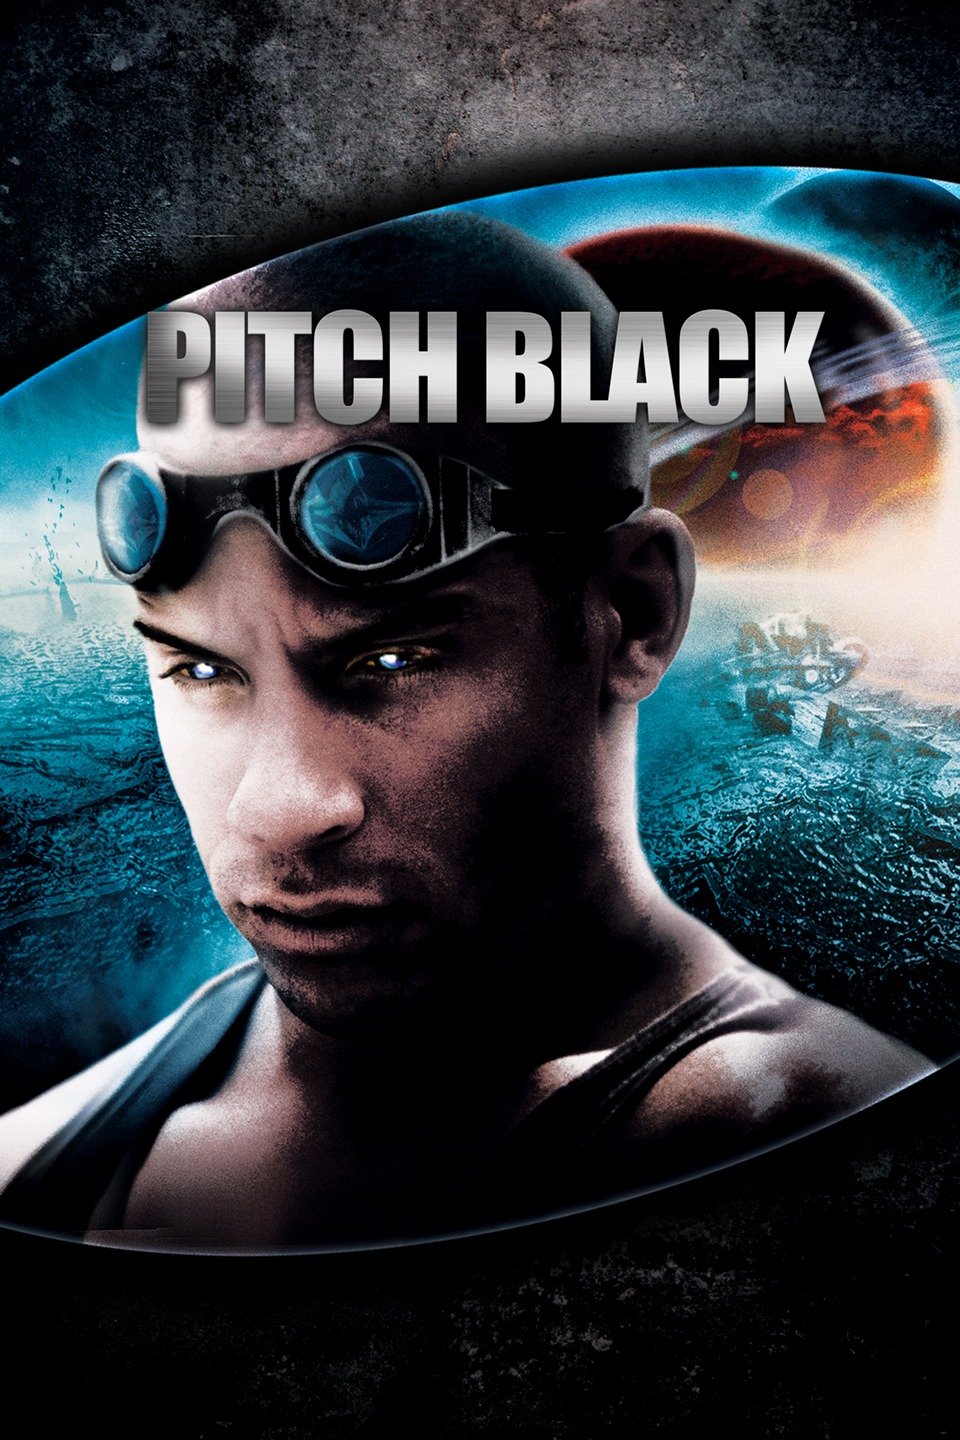 [MINI-HD] Pitch Black (2000) ฝูงค้างคาวฉลามสยองจักรวาล ภาค 1 [720p] [พากย์ไทย 5.1 + เสียงอังกฤษ 5.1] [บรรยายไทย + อังกฤษ] [เสียงไทย + ซับไทย]